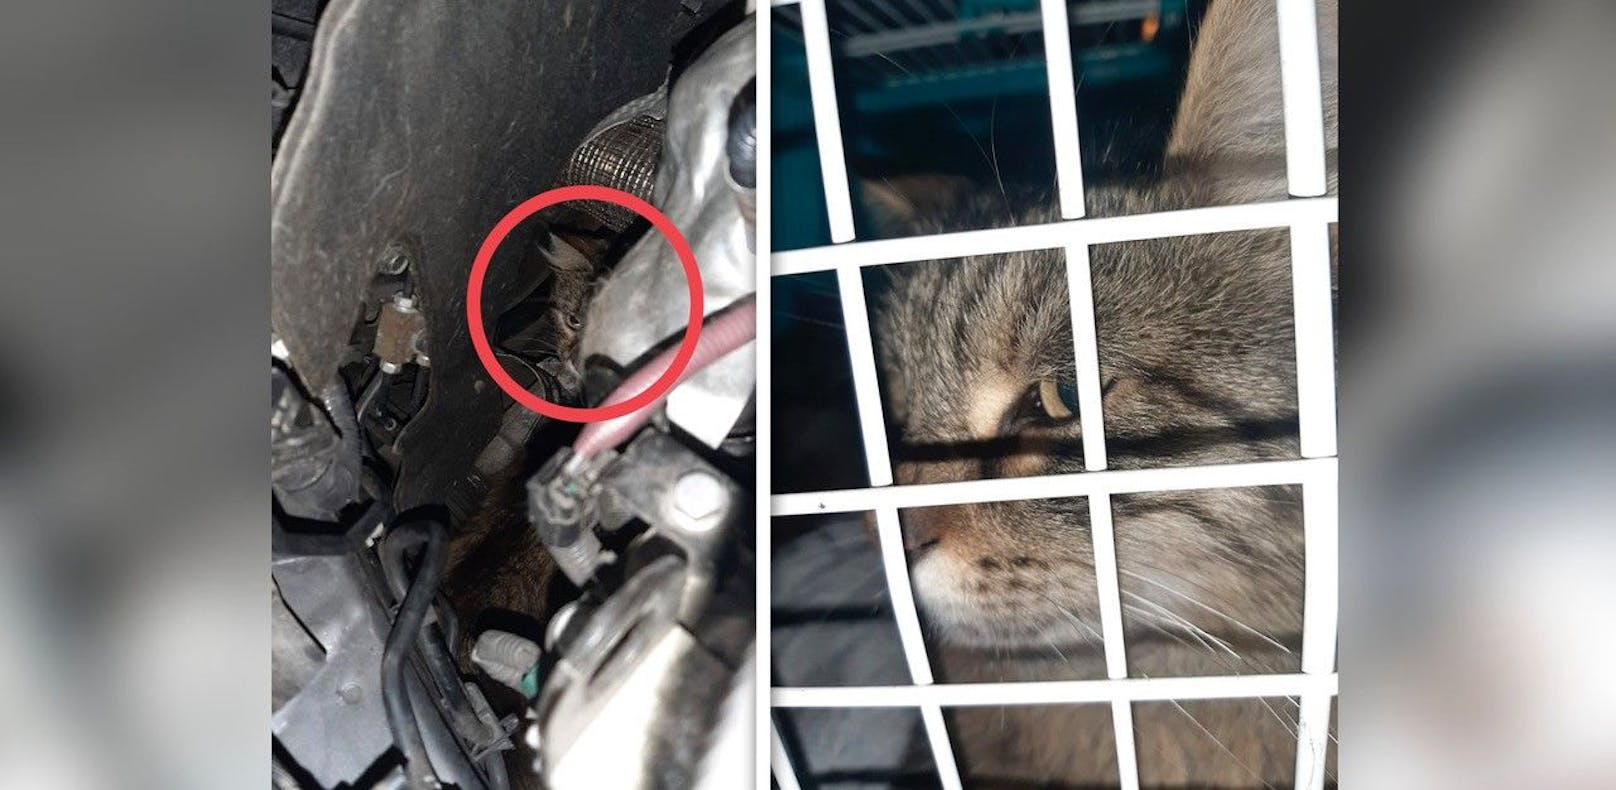 Die Katze flüchtete in den Motorraum eines Autos, versteckte sich dort drei Stunden lang.